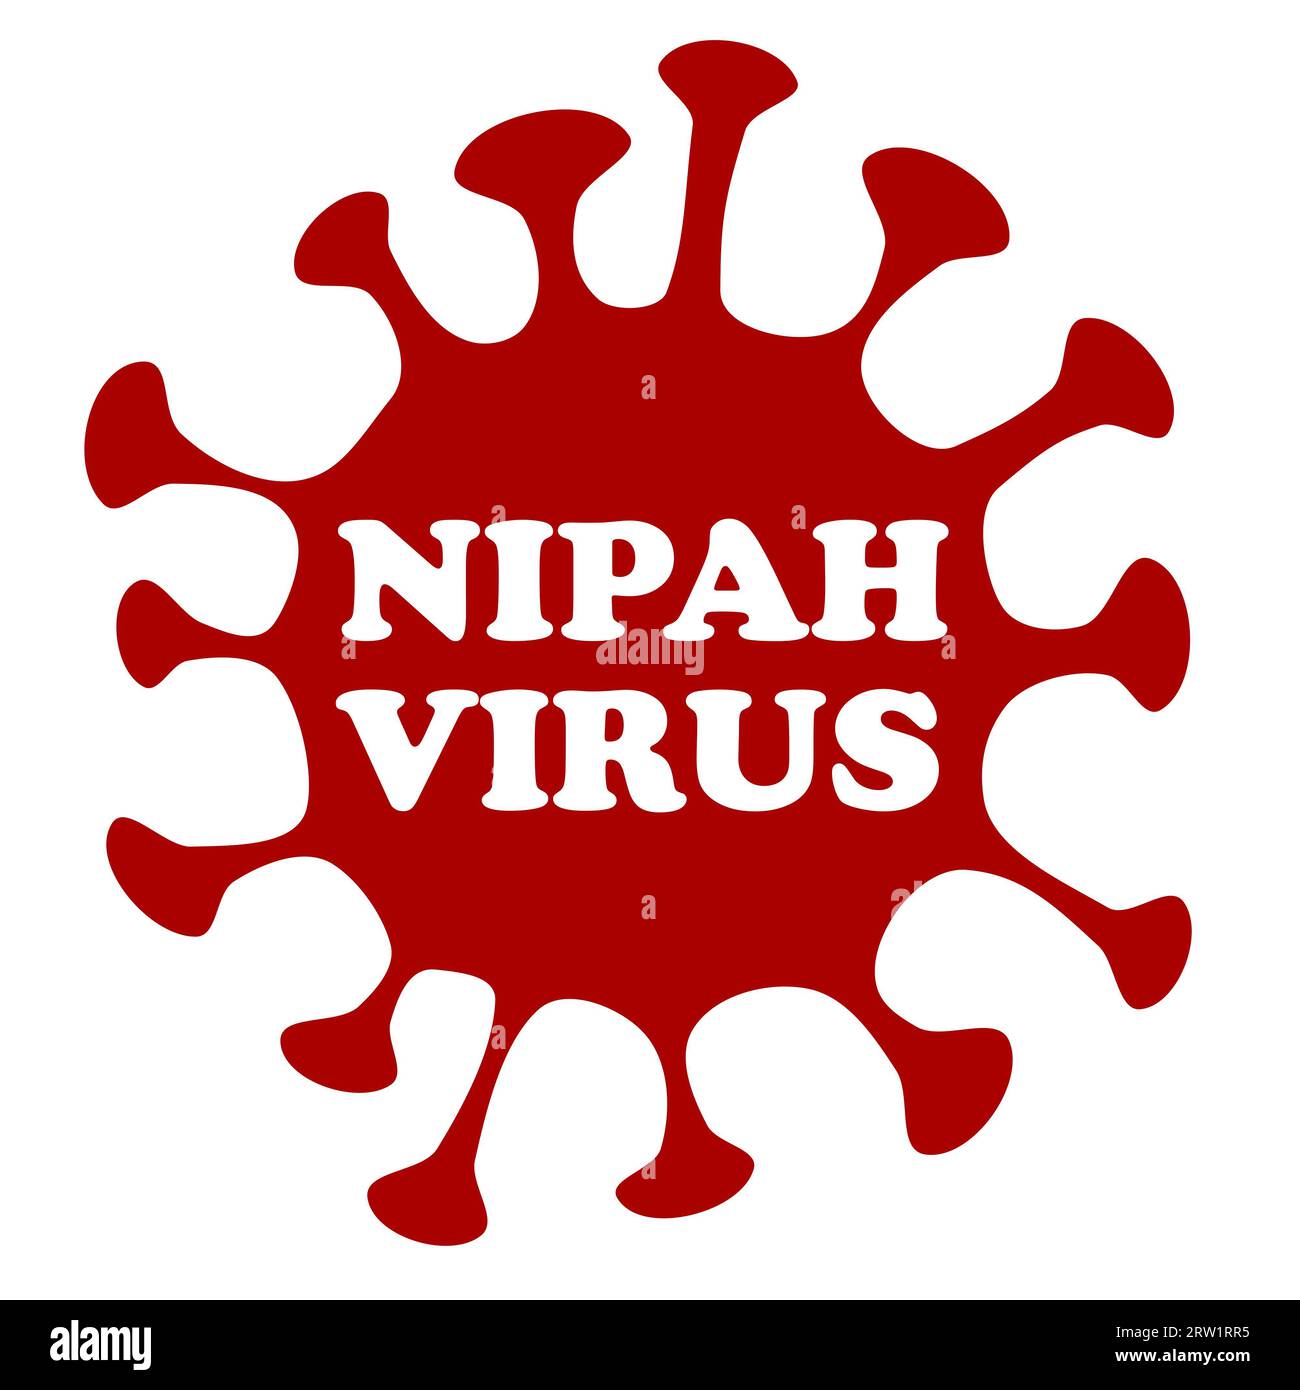 Vector illustration of Nipah virus of the paramyxovirus type Stock Photo